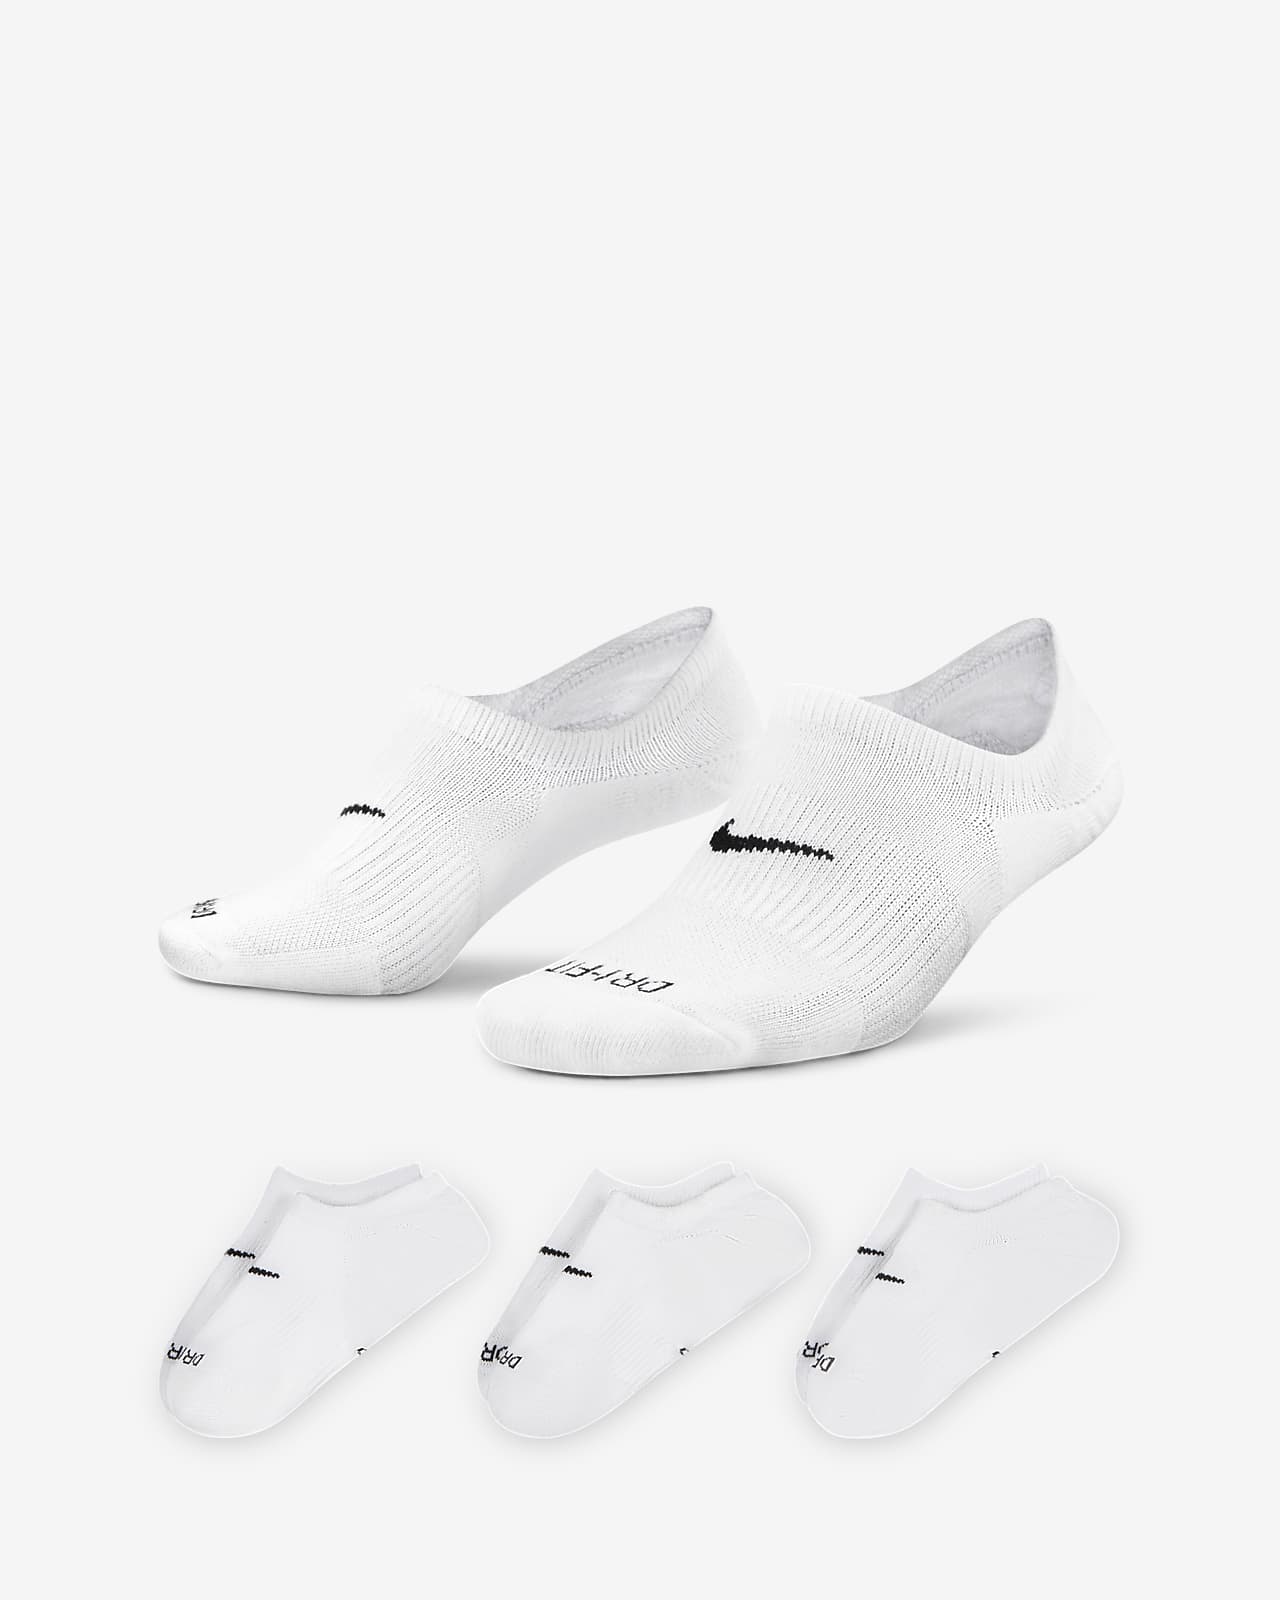 Socquettes ouvertes de training Nike Everyday Plus Cushioned pour Femme (3 paires)